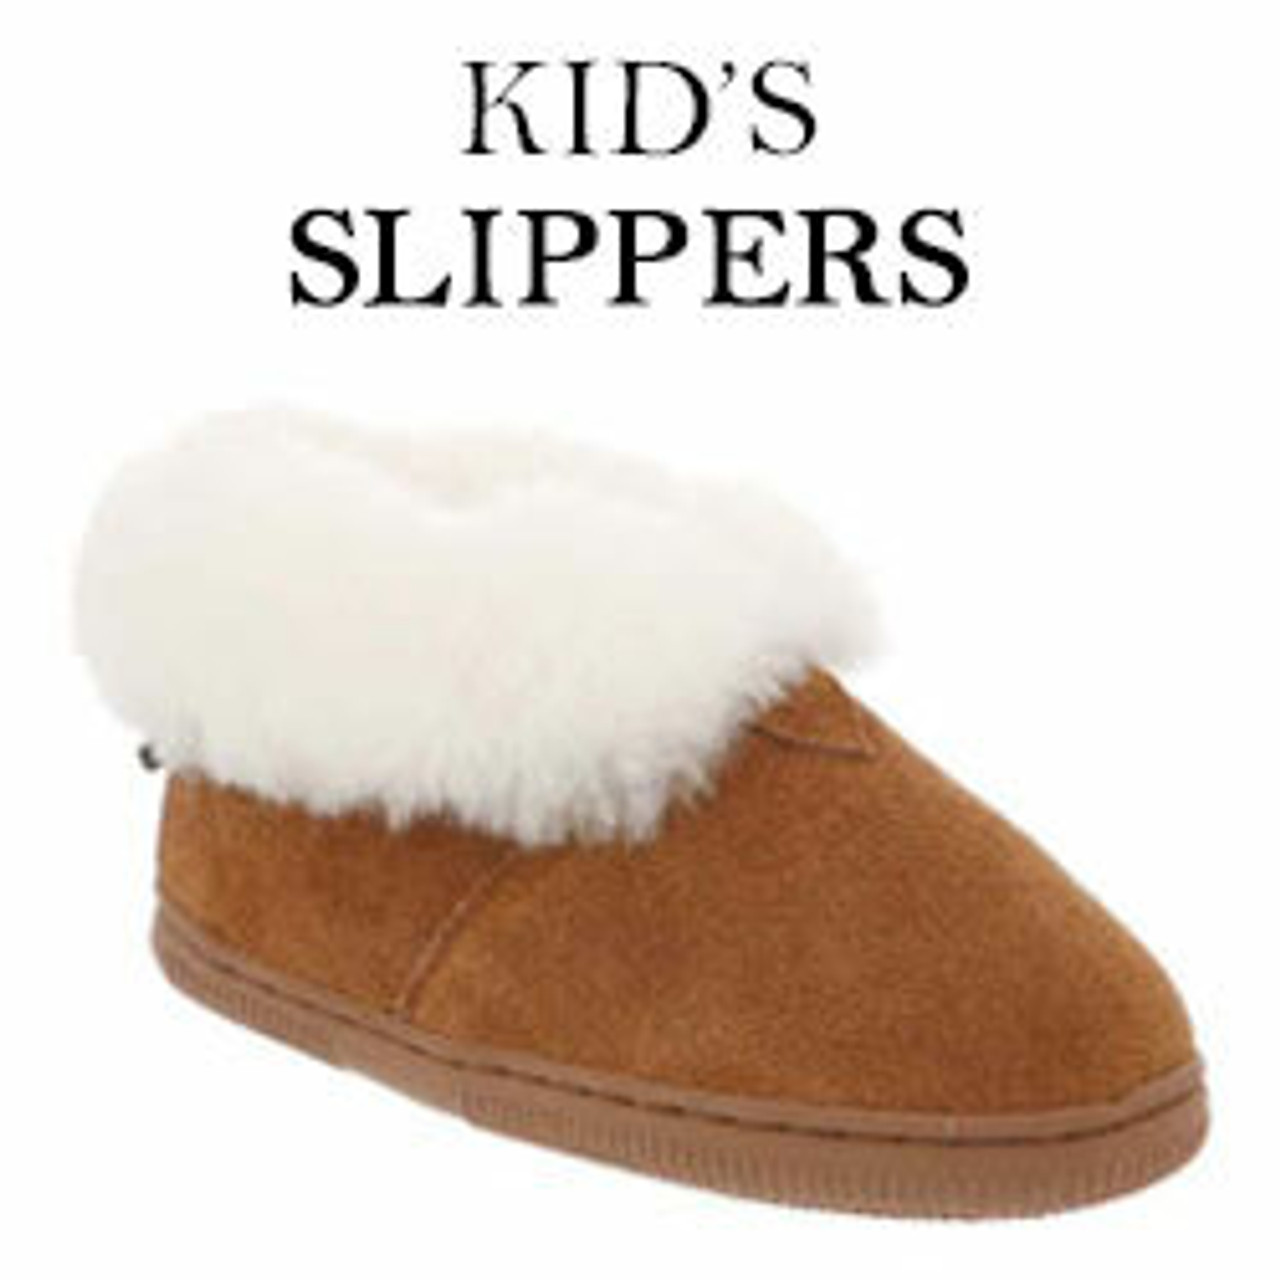 Orthopedic Slippers For Kids | Children's Slippers